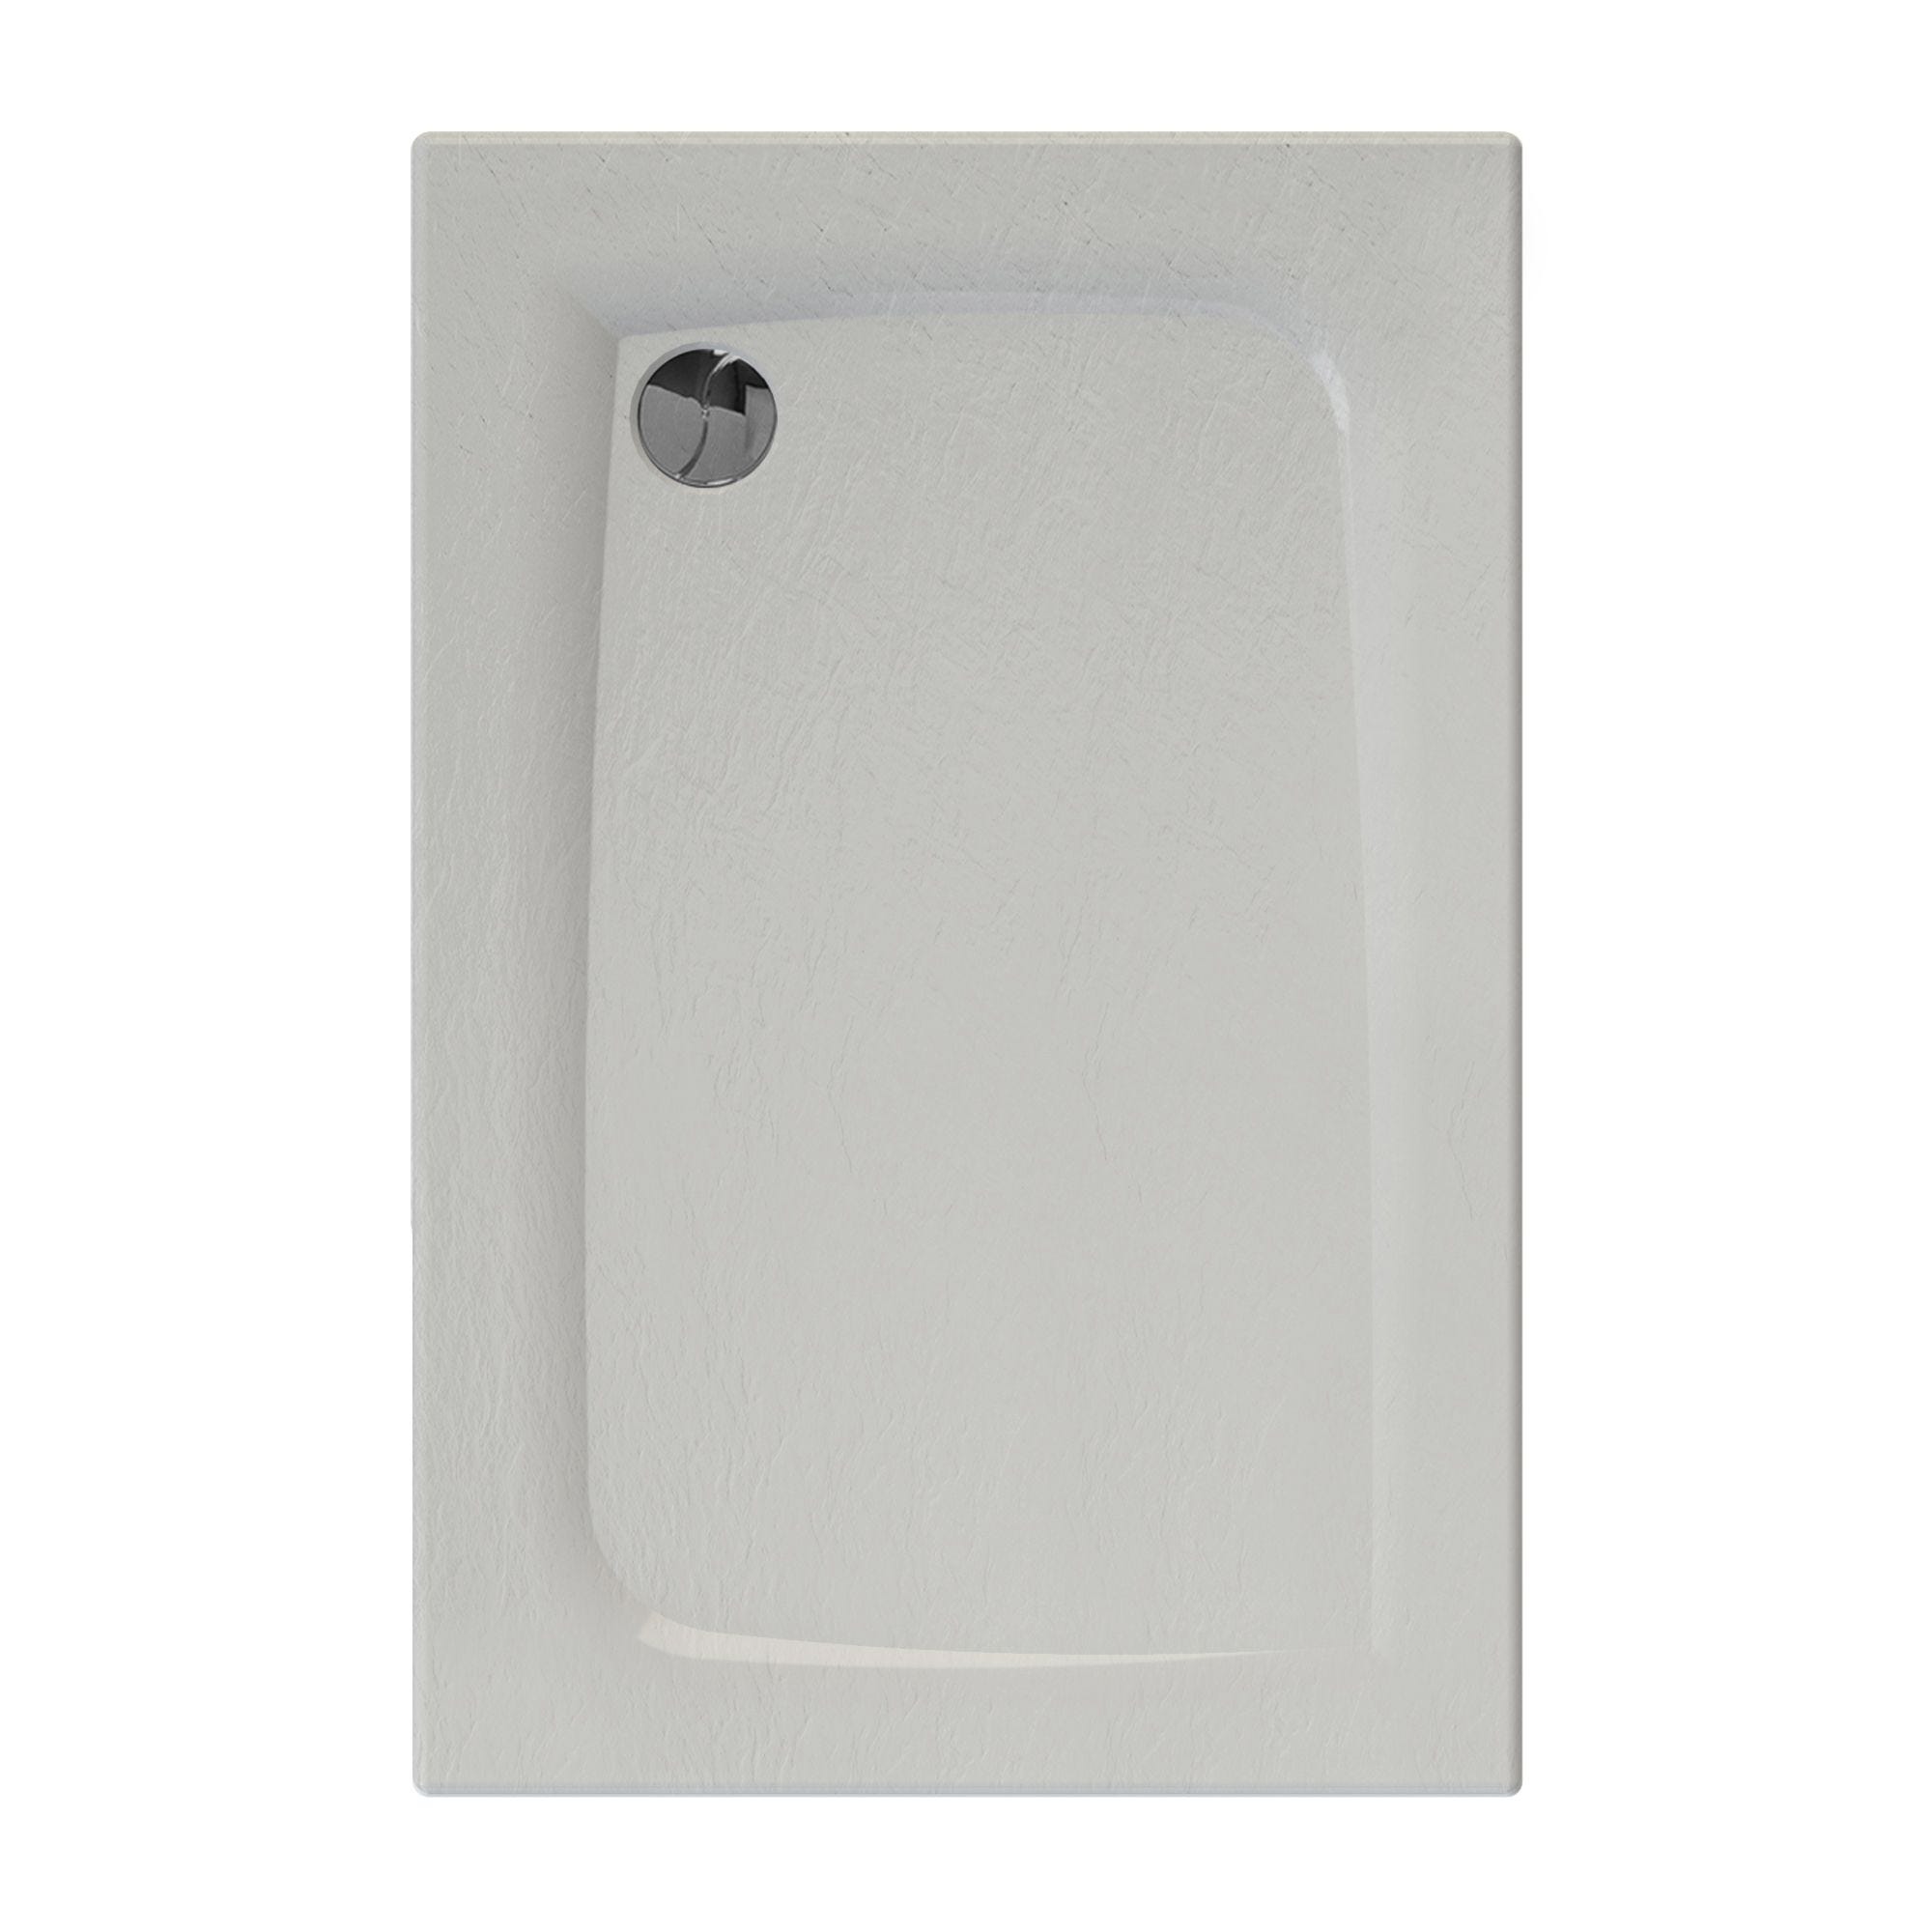 Receveur de douche extra-plat texture effet pierre MOONEO RECTANGLE 120 x 80 cm blanc 0